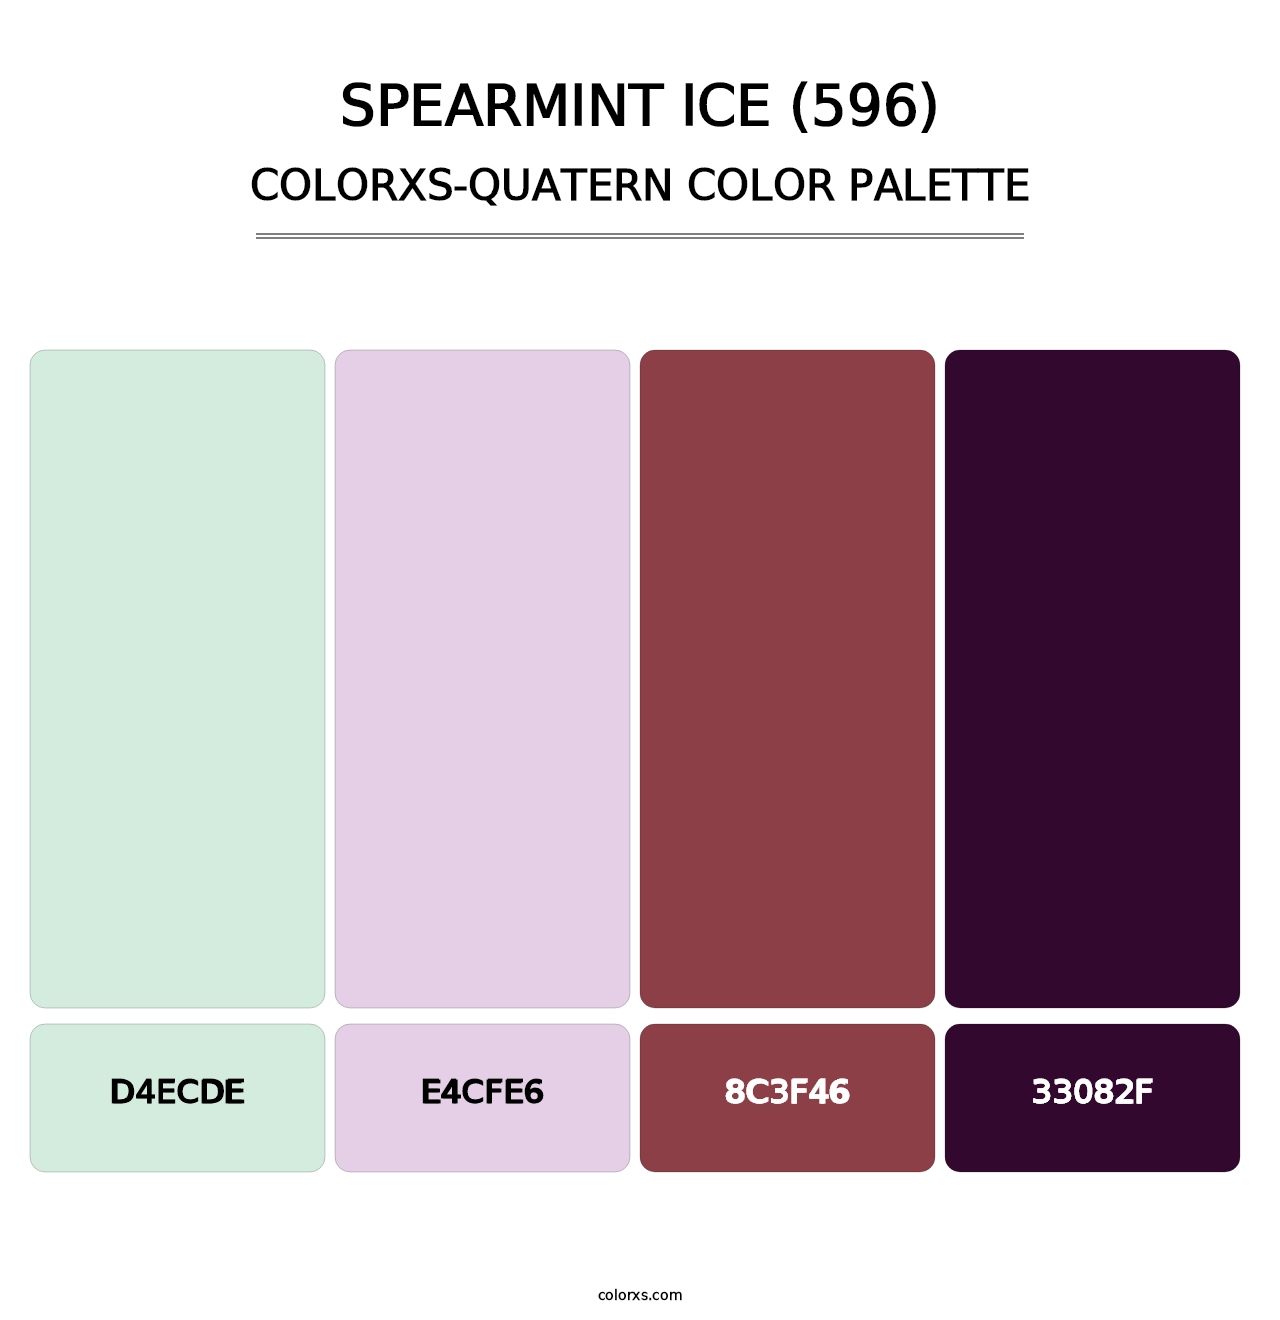 Spearmint Ice (596) - Colorxs Quatern Palette